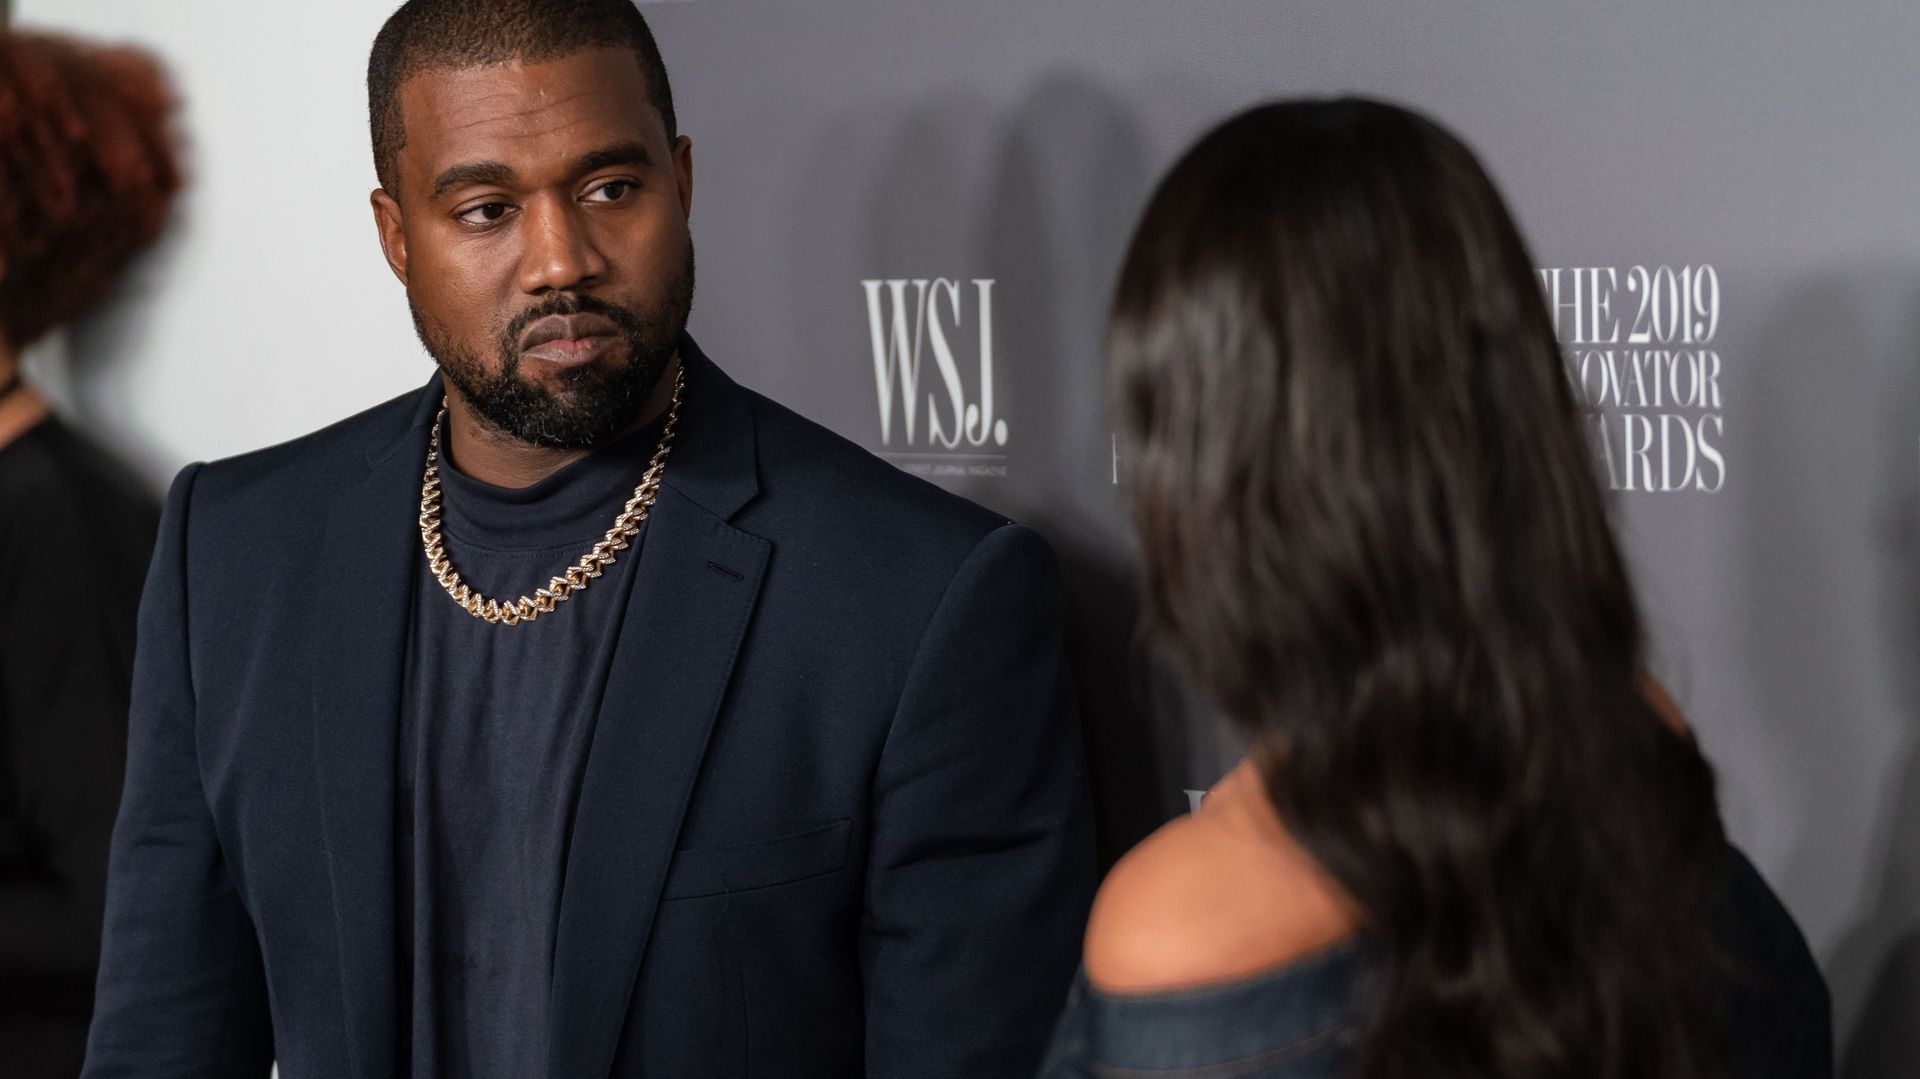 Kanye West, bipolaire fait trembler la toile pour son premier meeting en vue des présidentielles américaines